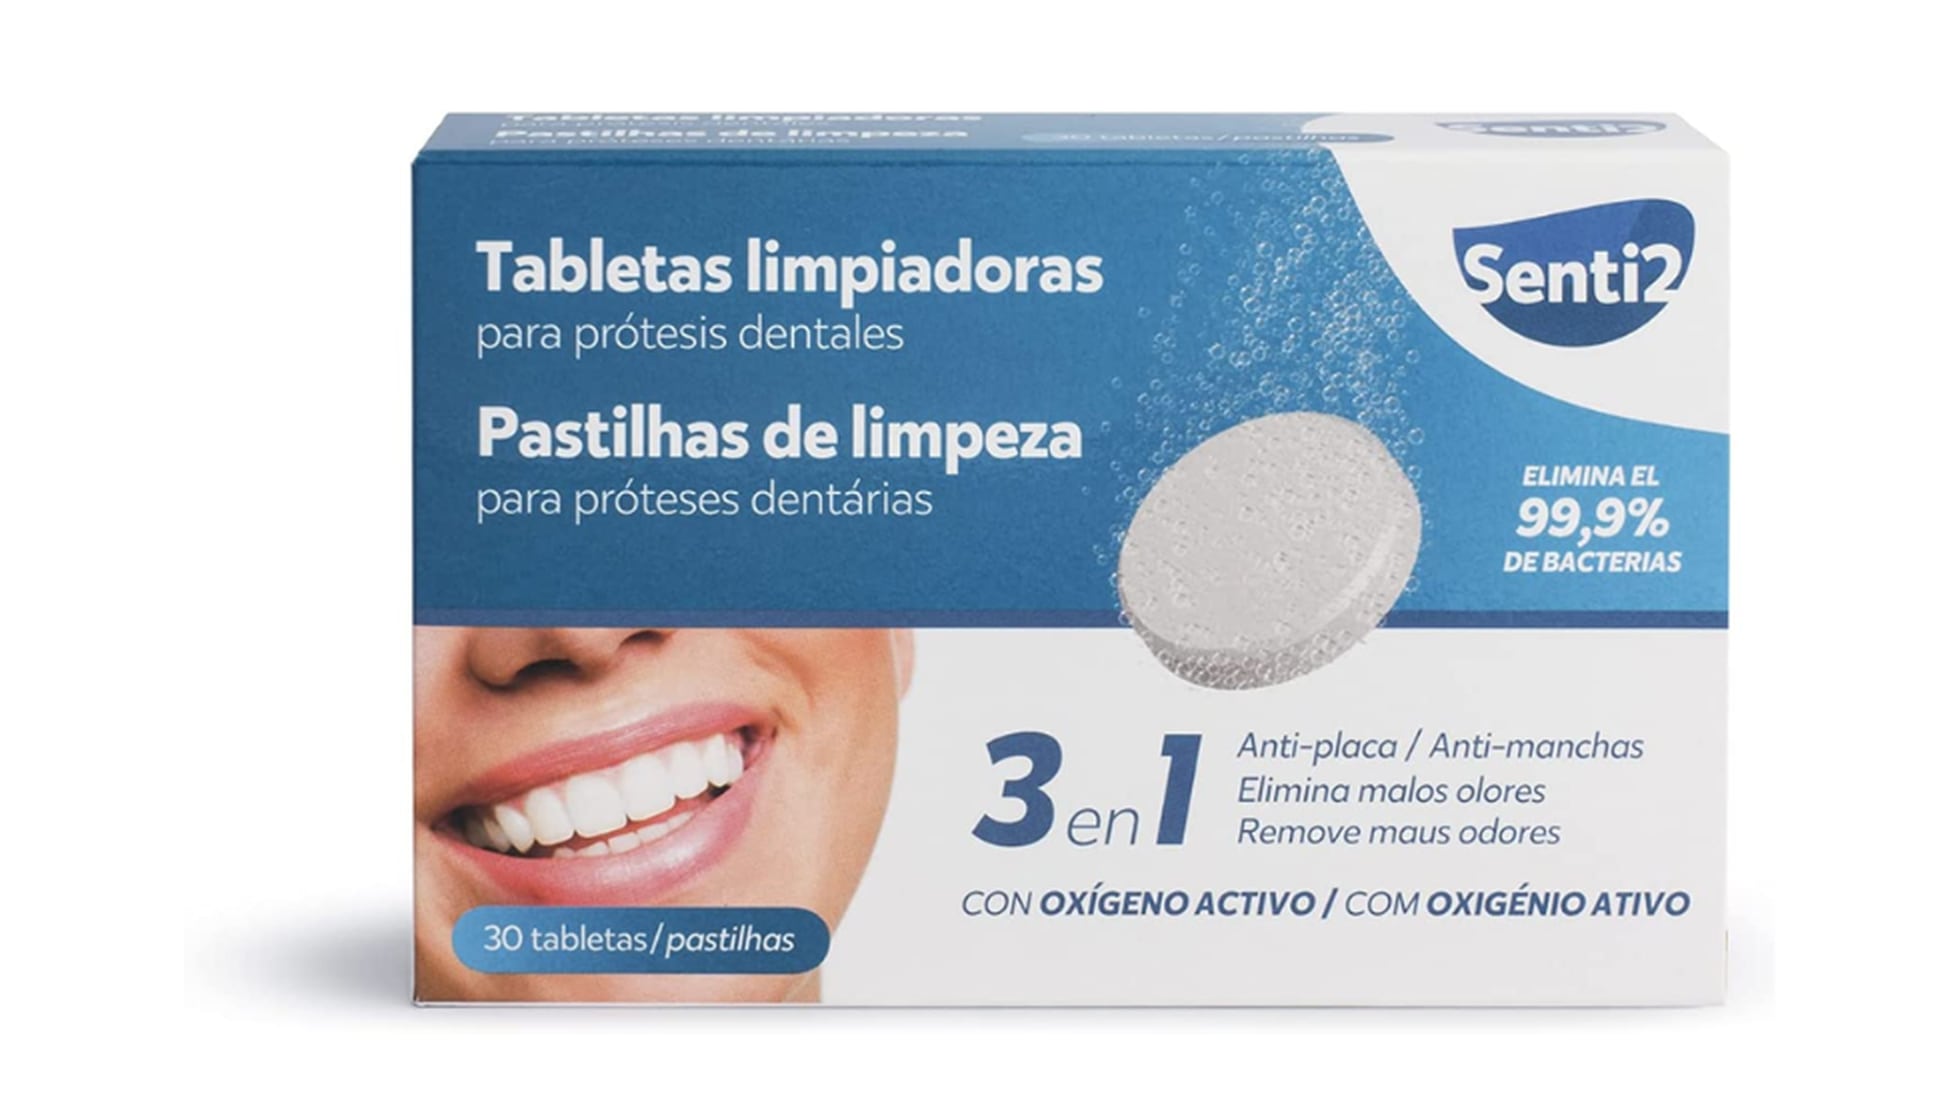 Tabletas limpiadoras para prótesis dentales, férula dental y